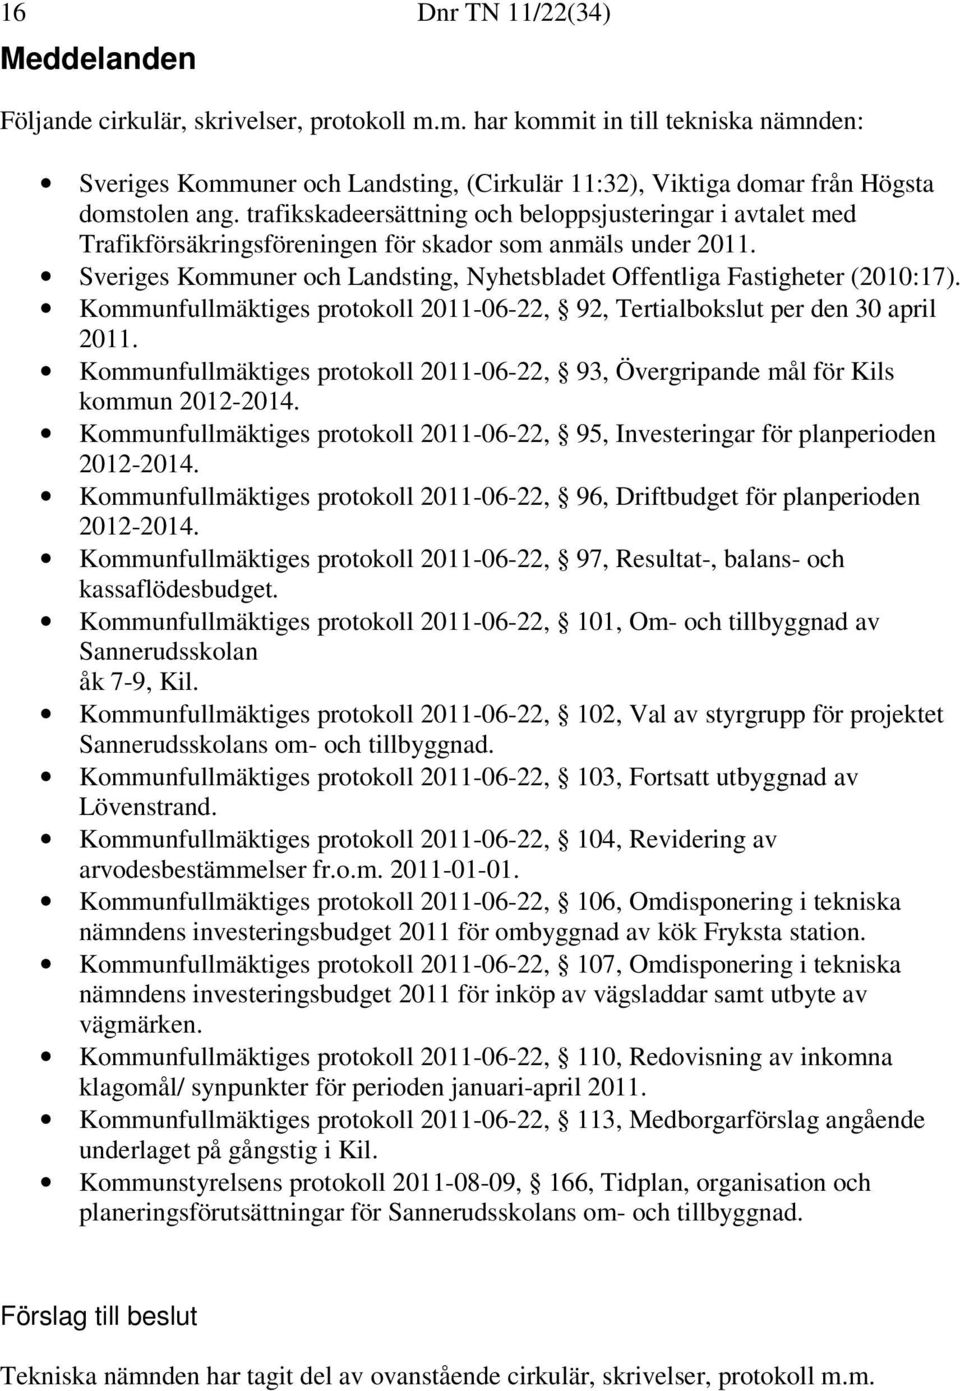 trafikskadeersättning och beloppsjusteringar i avtalet med Trafikförsäkringsföreningen för skador som anmäls under 2011. Sveriges Kommuner och Landsting, Nyhetsbladet Offentliga Fastigheter (2010:17).